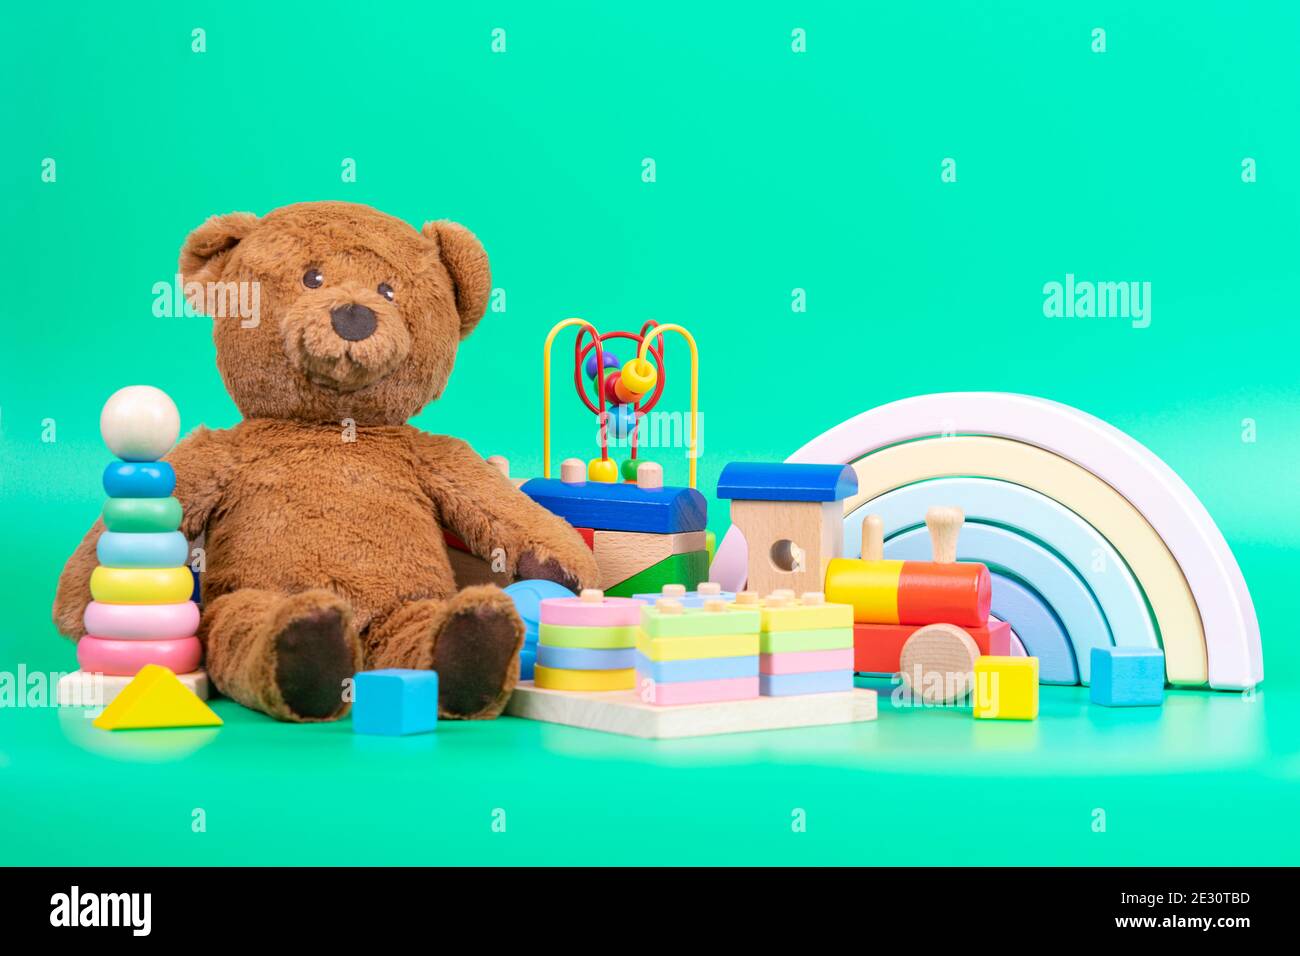 Collection de jouets pour enfants. Ours en peluche, arc-en-ciel en bois,  train et jouets pour bébés sur fond vert clair Photo Stock - Alamy